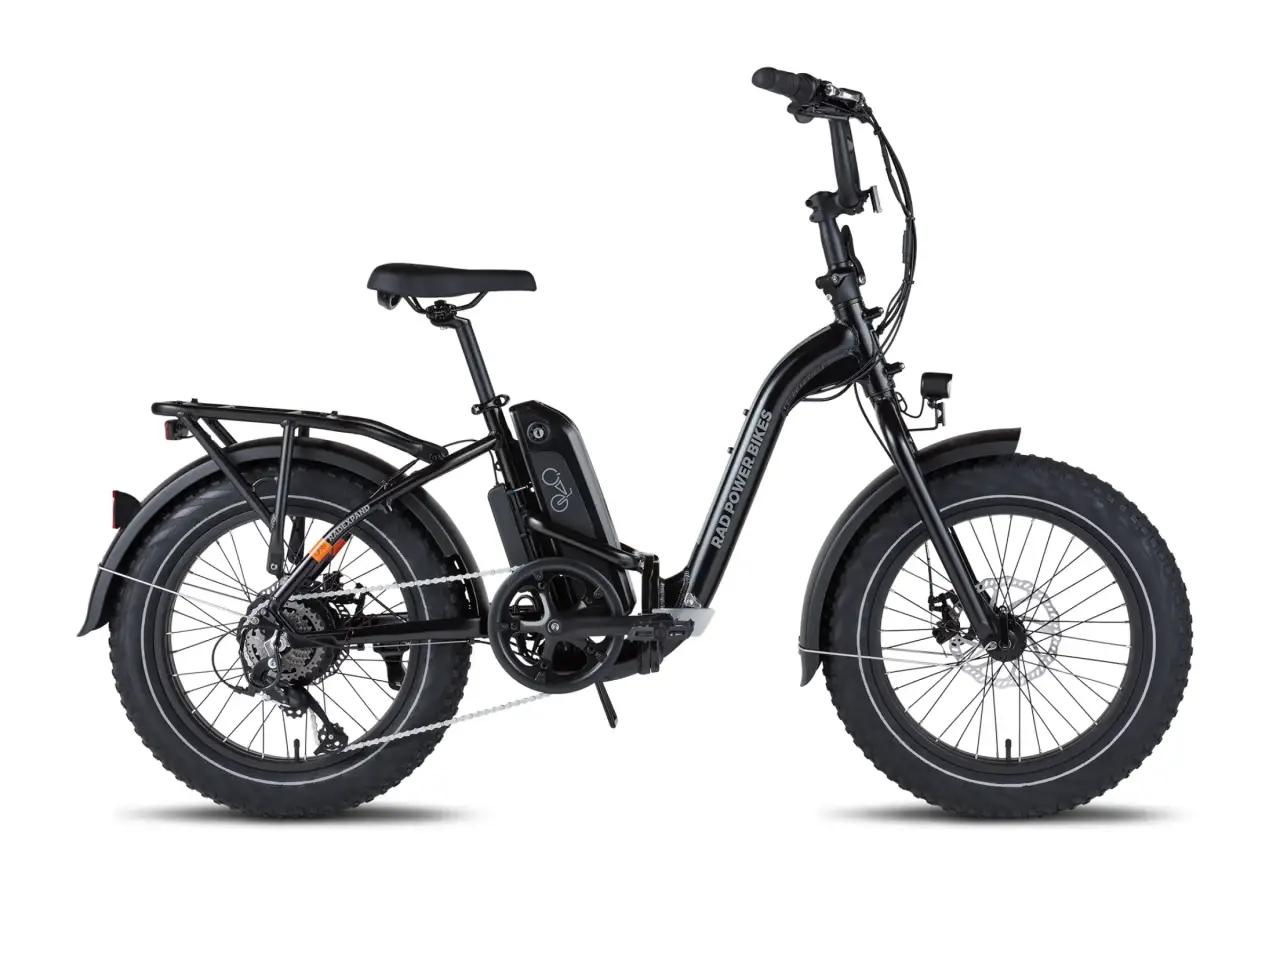 Uitvouwen en eropuit trekken: Rad Power Bikes biedt de ideale combinatie van compact design img#1